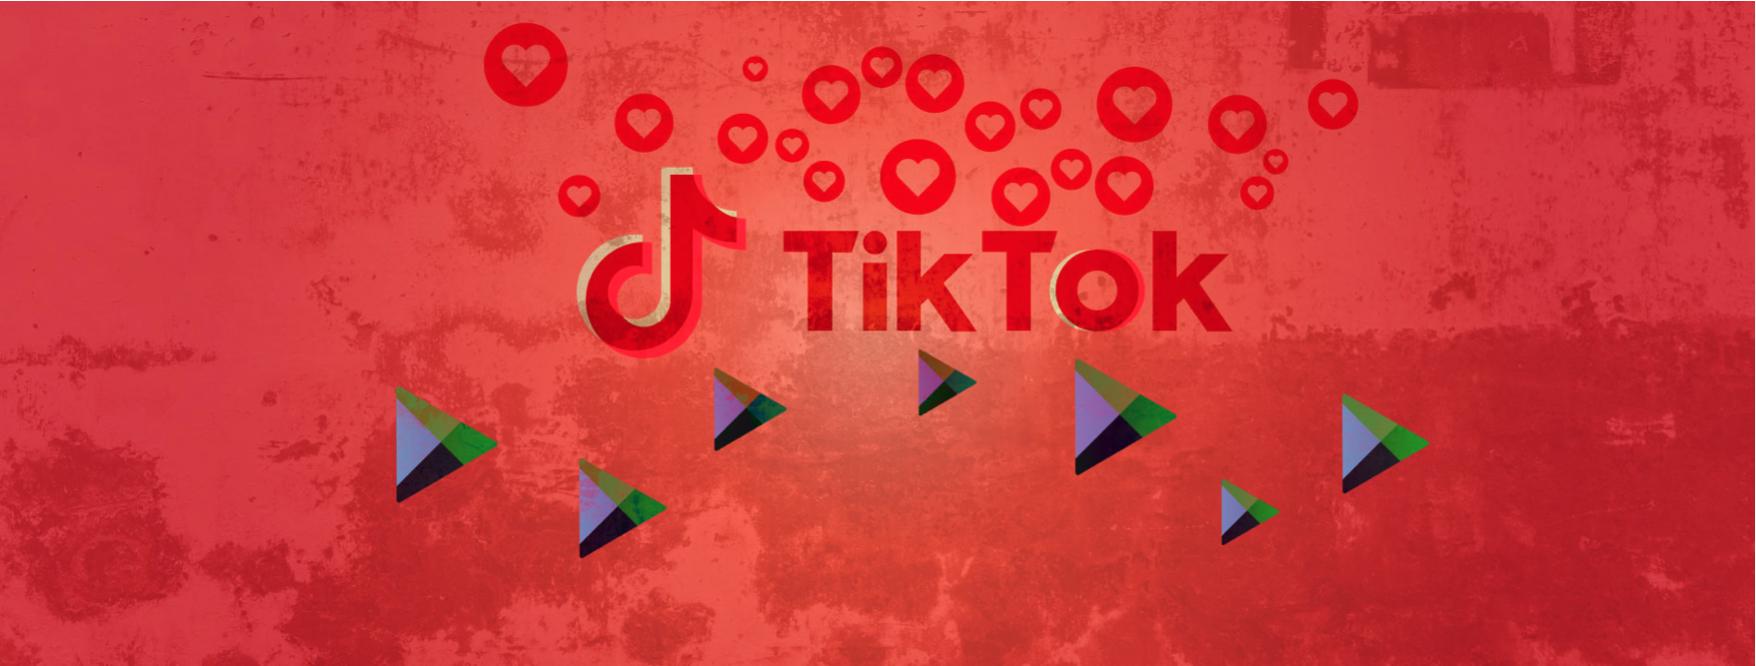 Suspicious third-party apps monetize fake engagement on TikTok